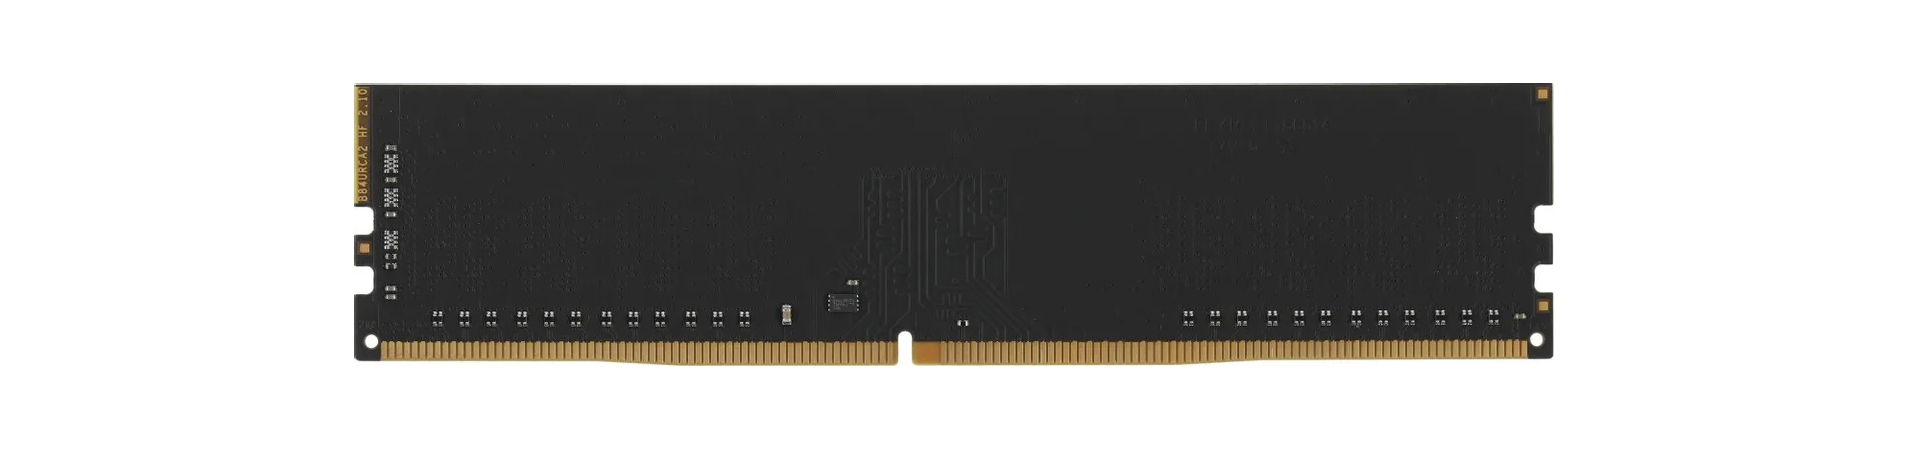 Оперативная память AMD Radeon R7 Performance Series (R748G2400U2S-U) 8 ГБ, изображение 2